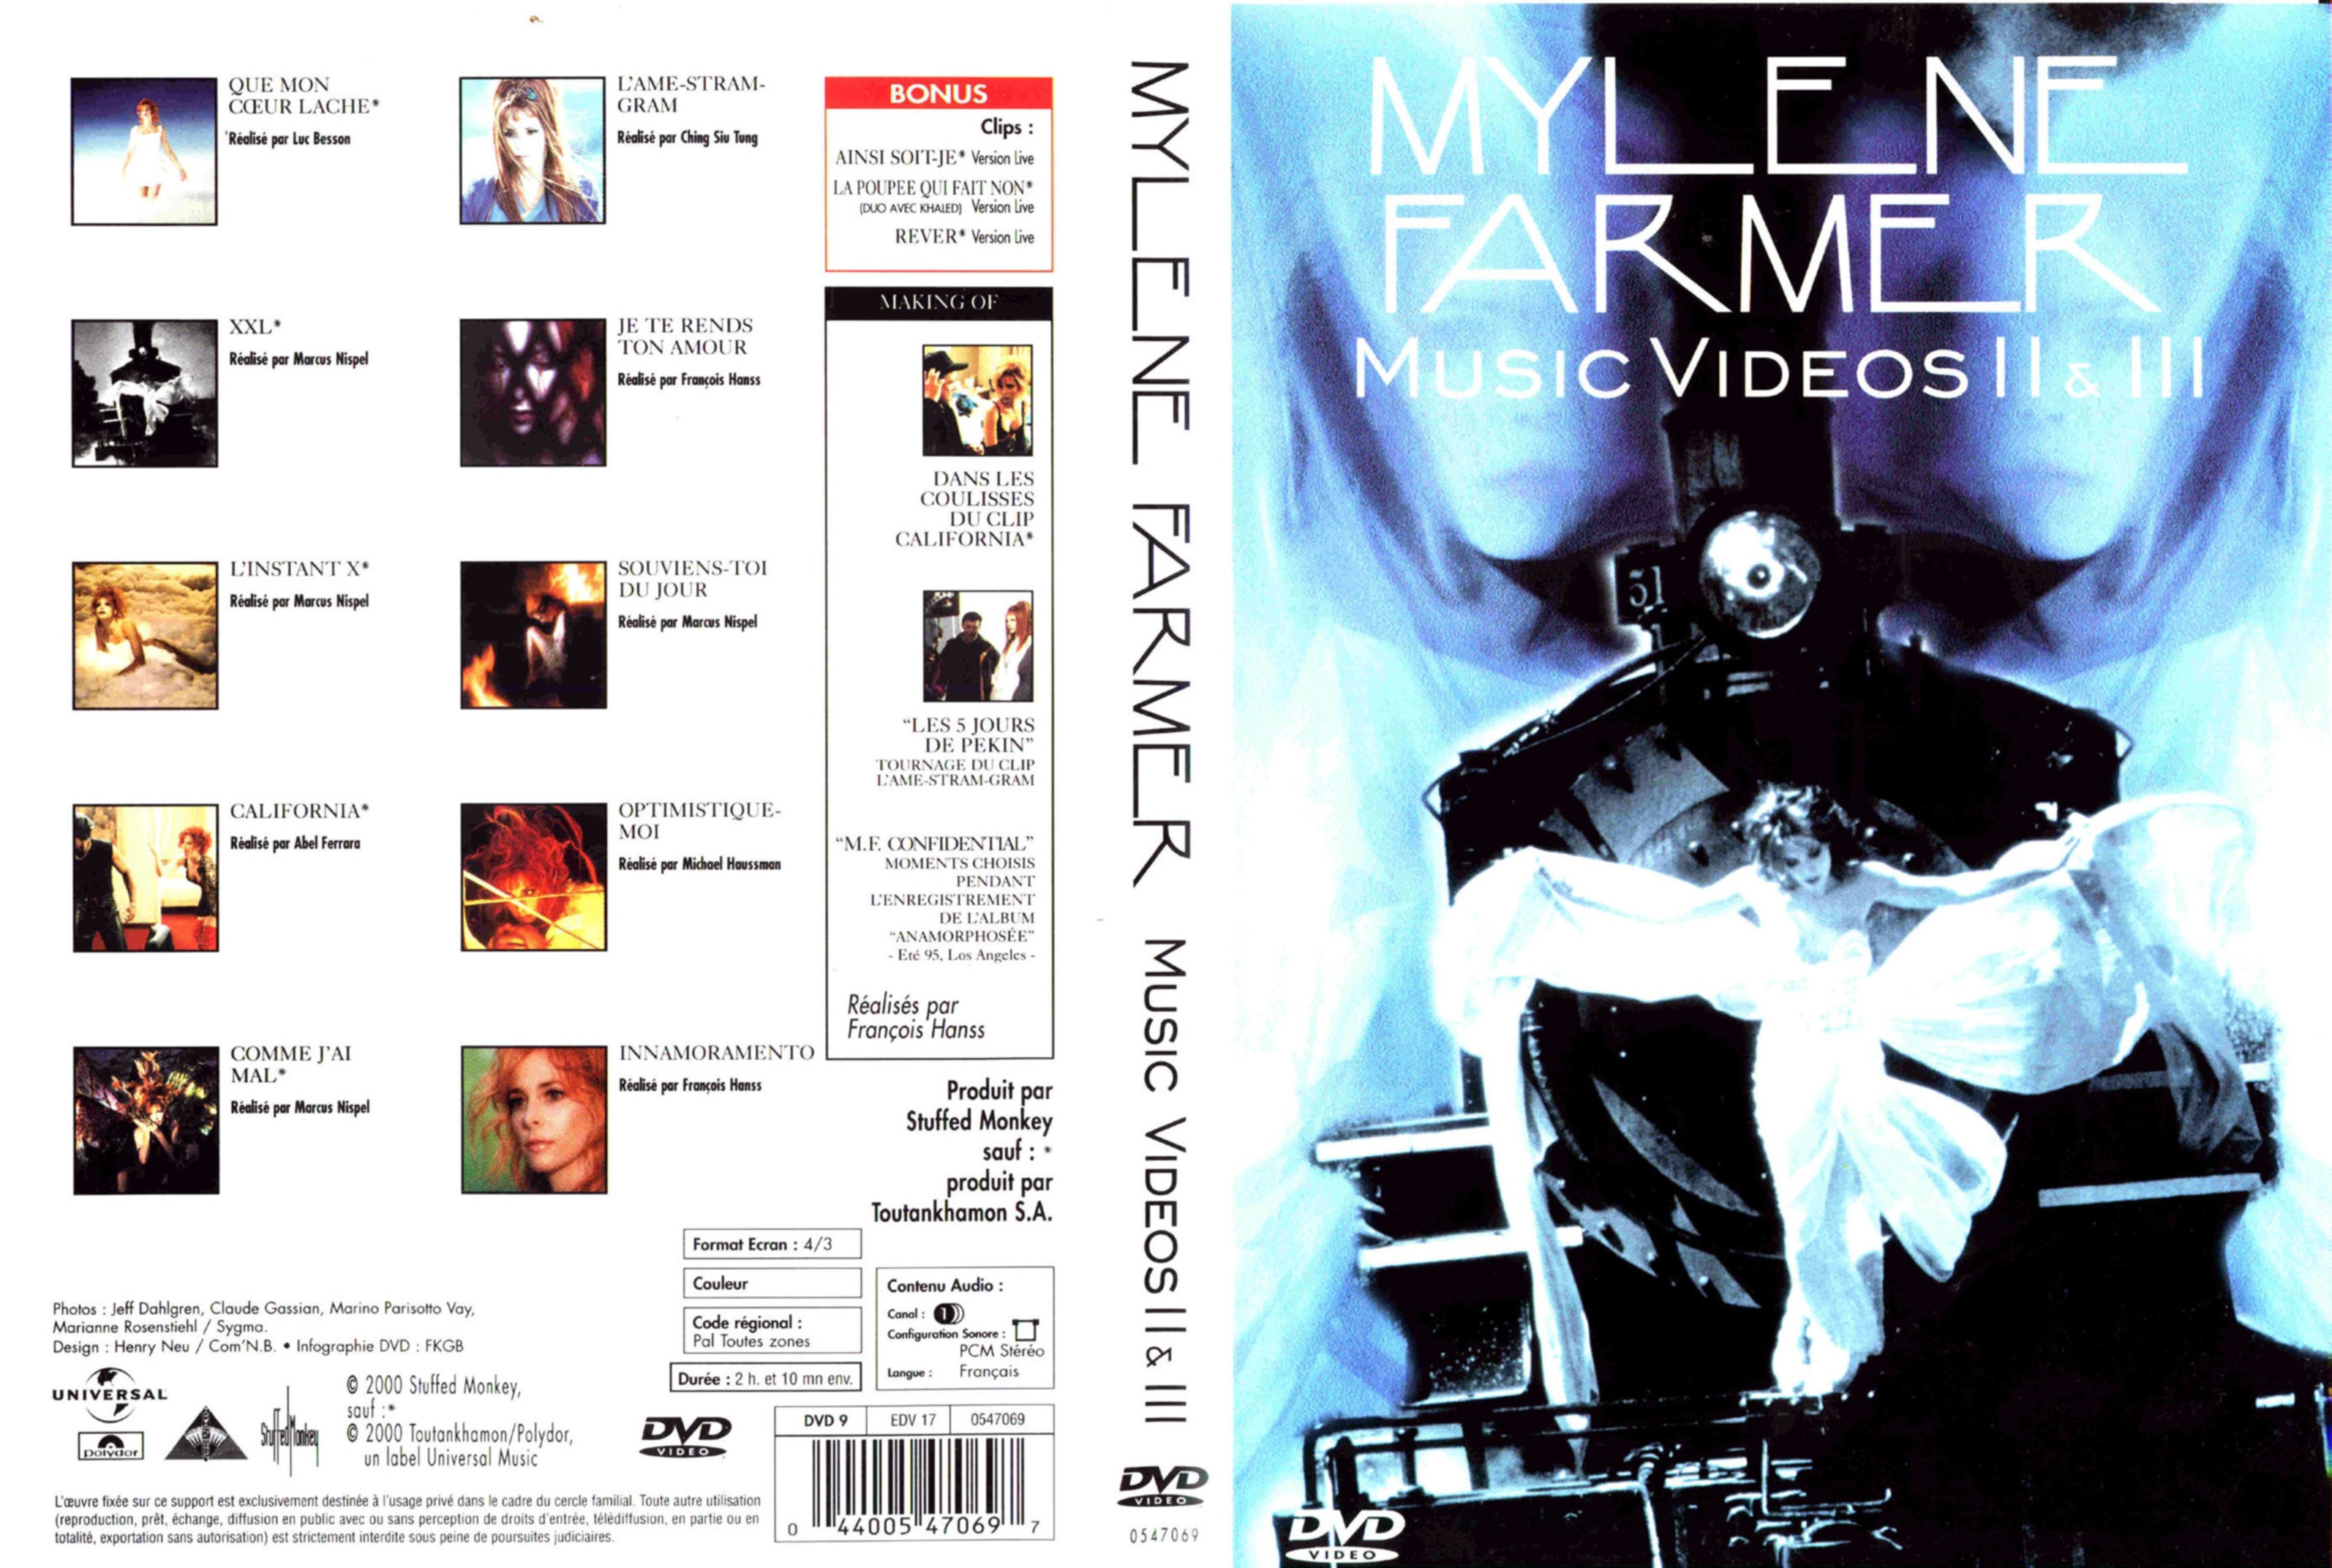 Jaquette DVD Mylene Farmer music video 2 et 3